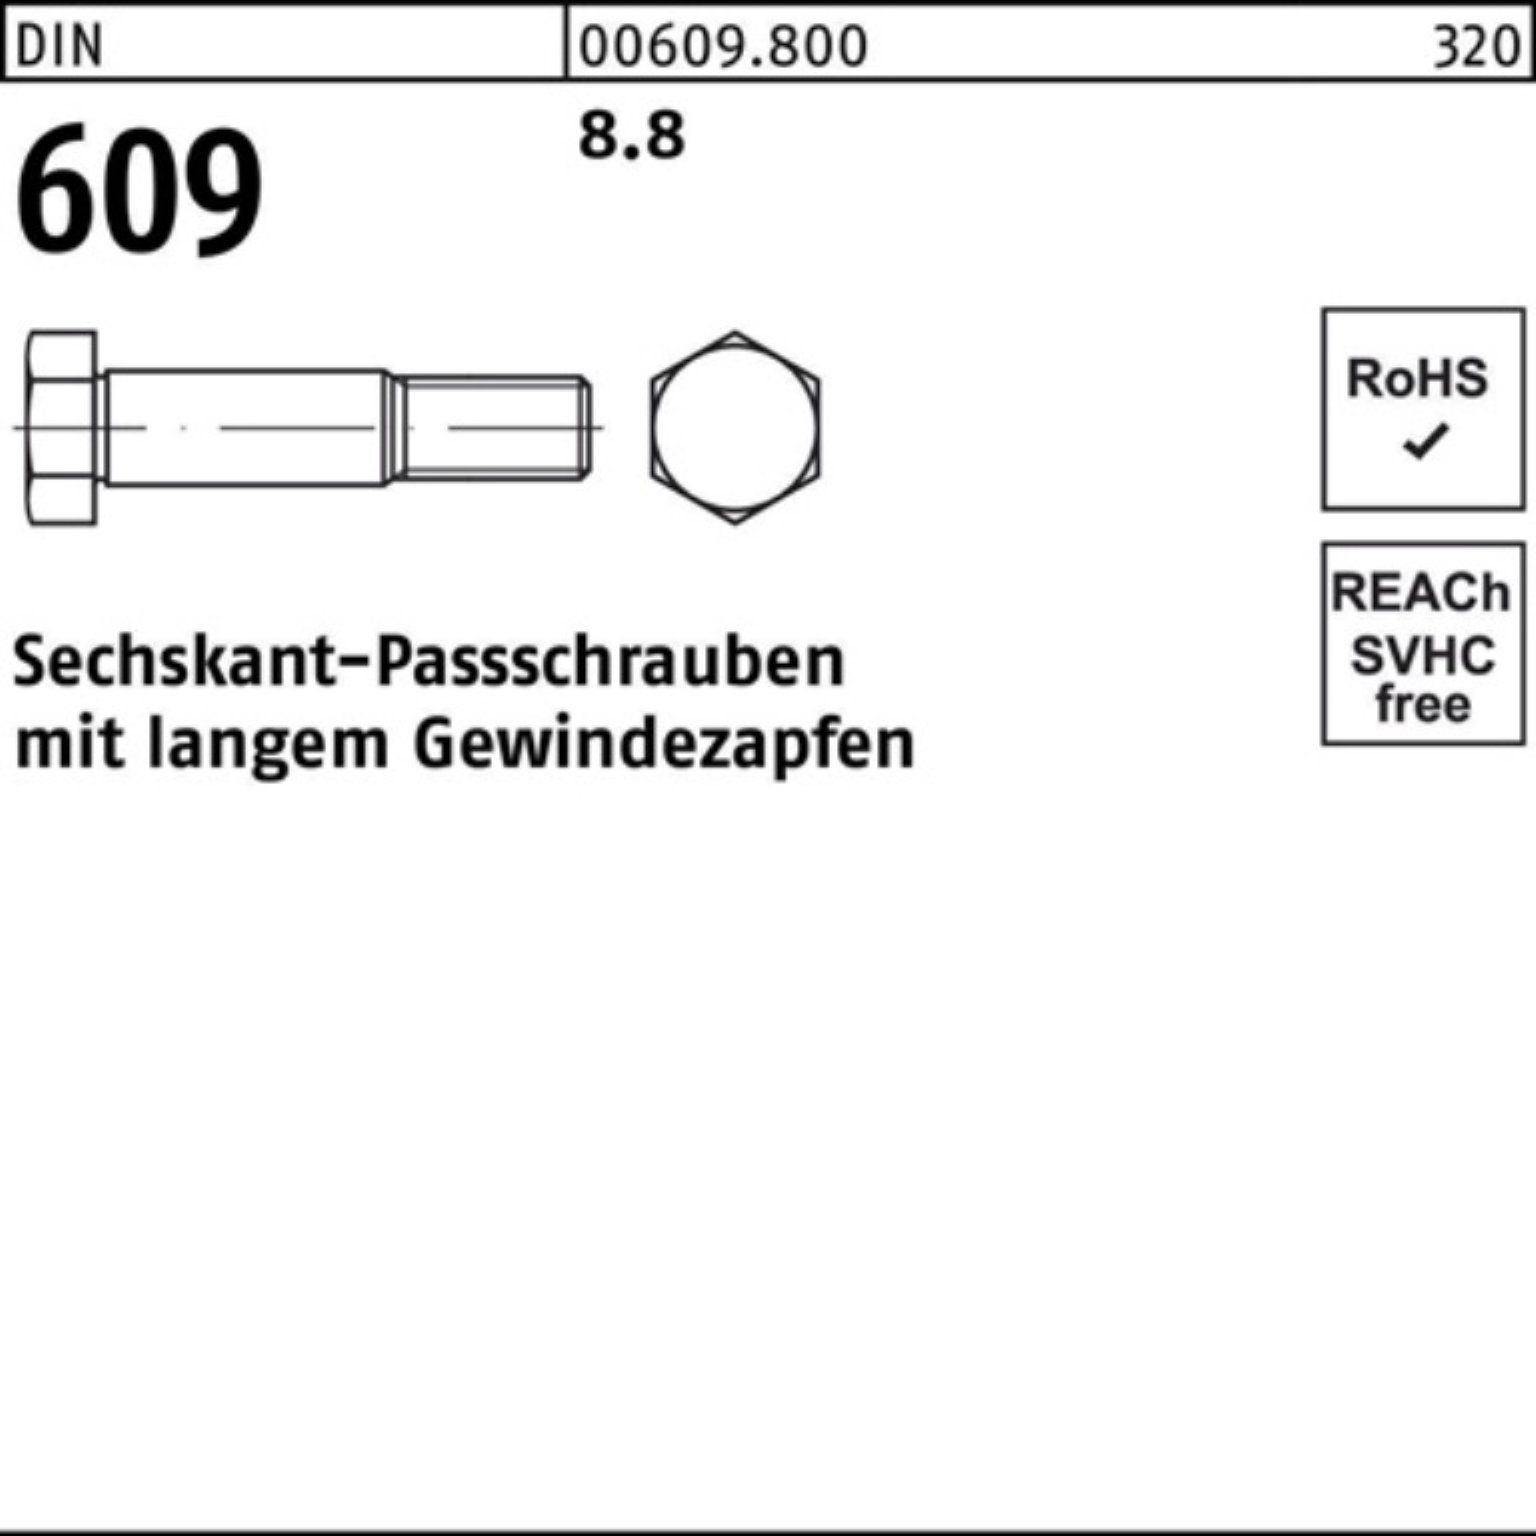 Sechskantpassschraube 100er Gewindezapfen Reyher 609 langem DIN Pack M16x 90 Schraube